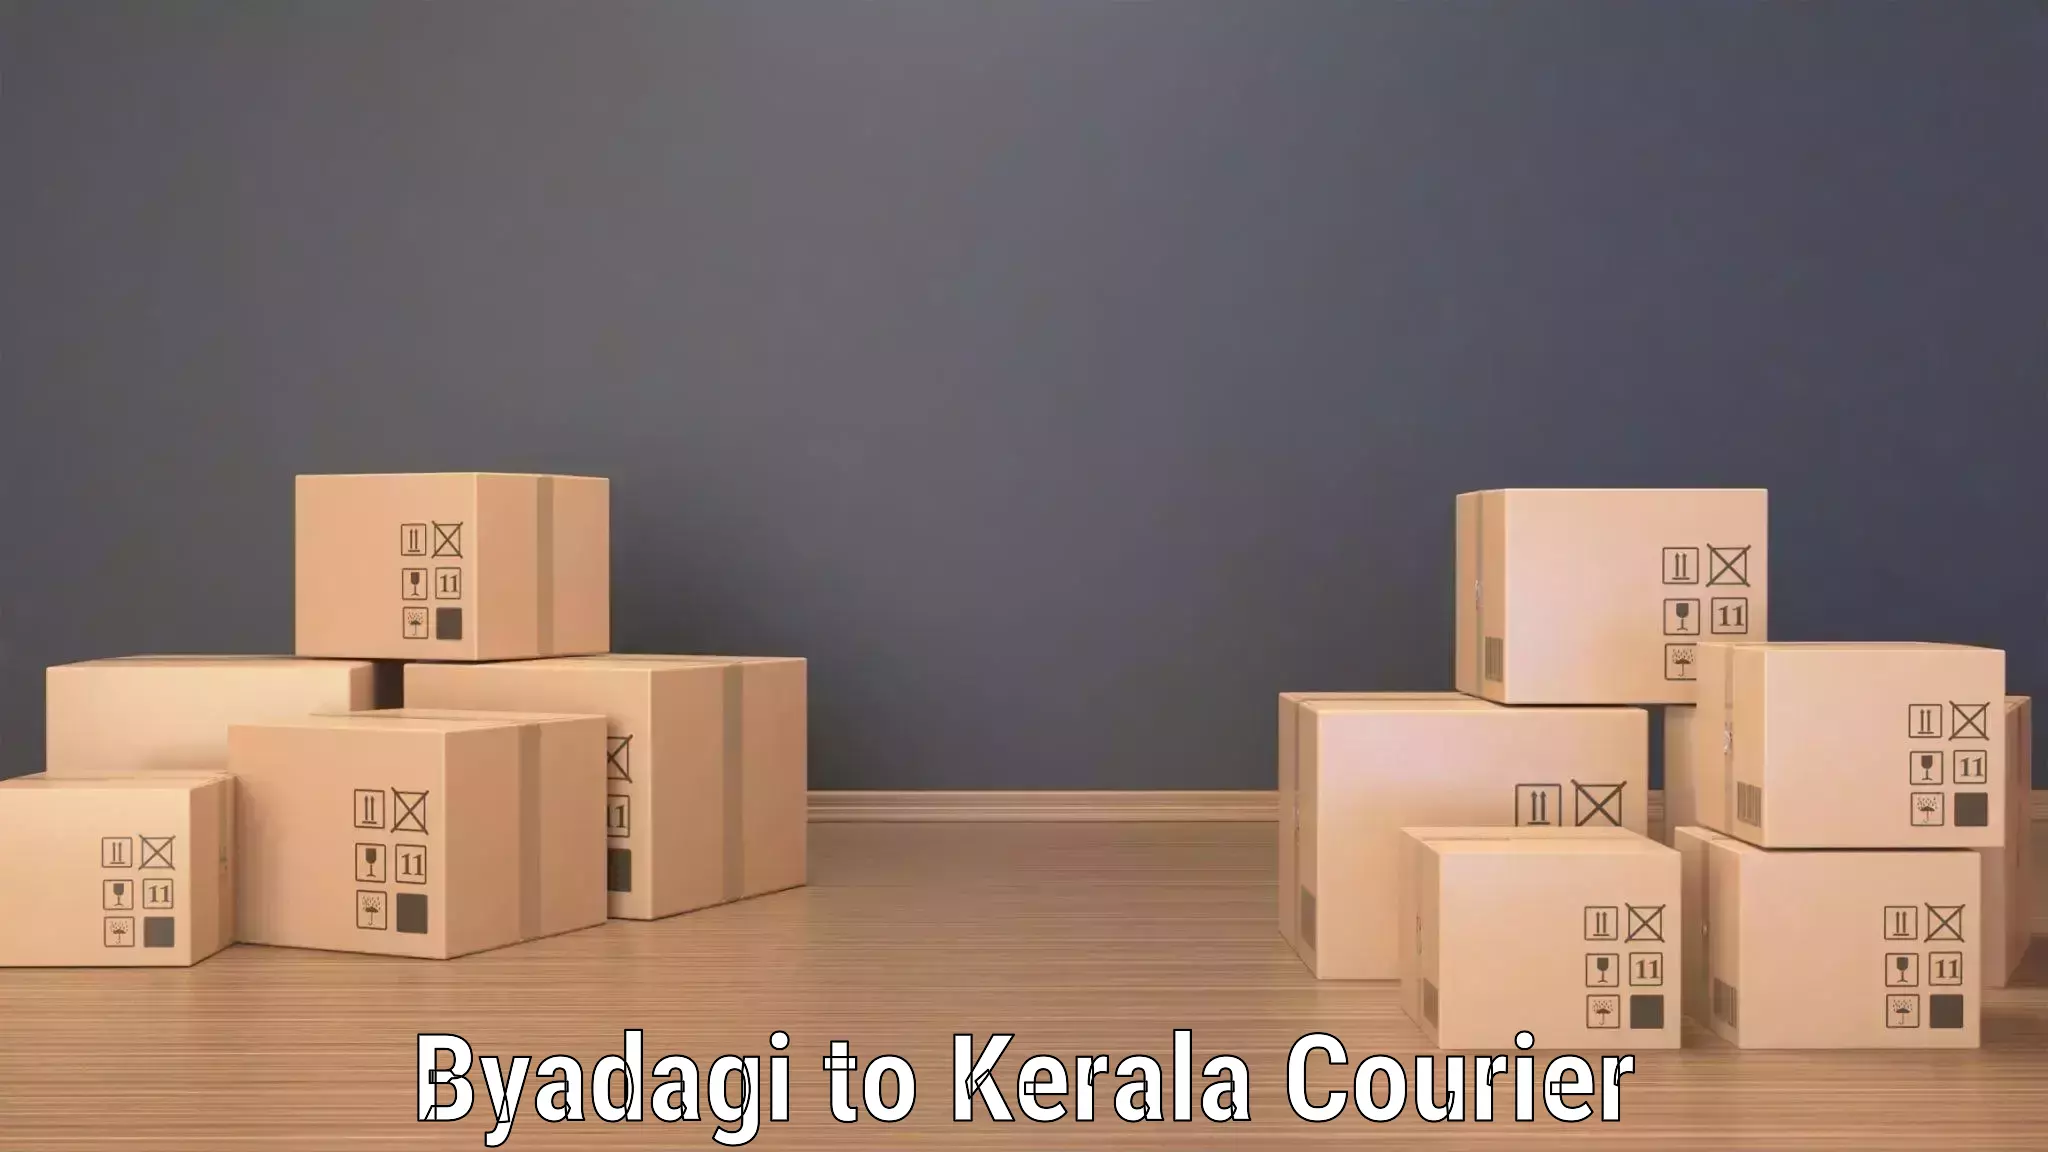 Global shipping solutions Byadagi to Thiruvananthapuram